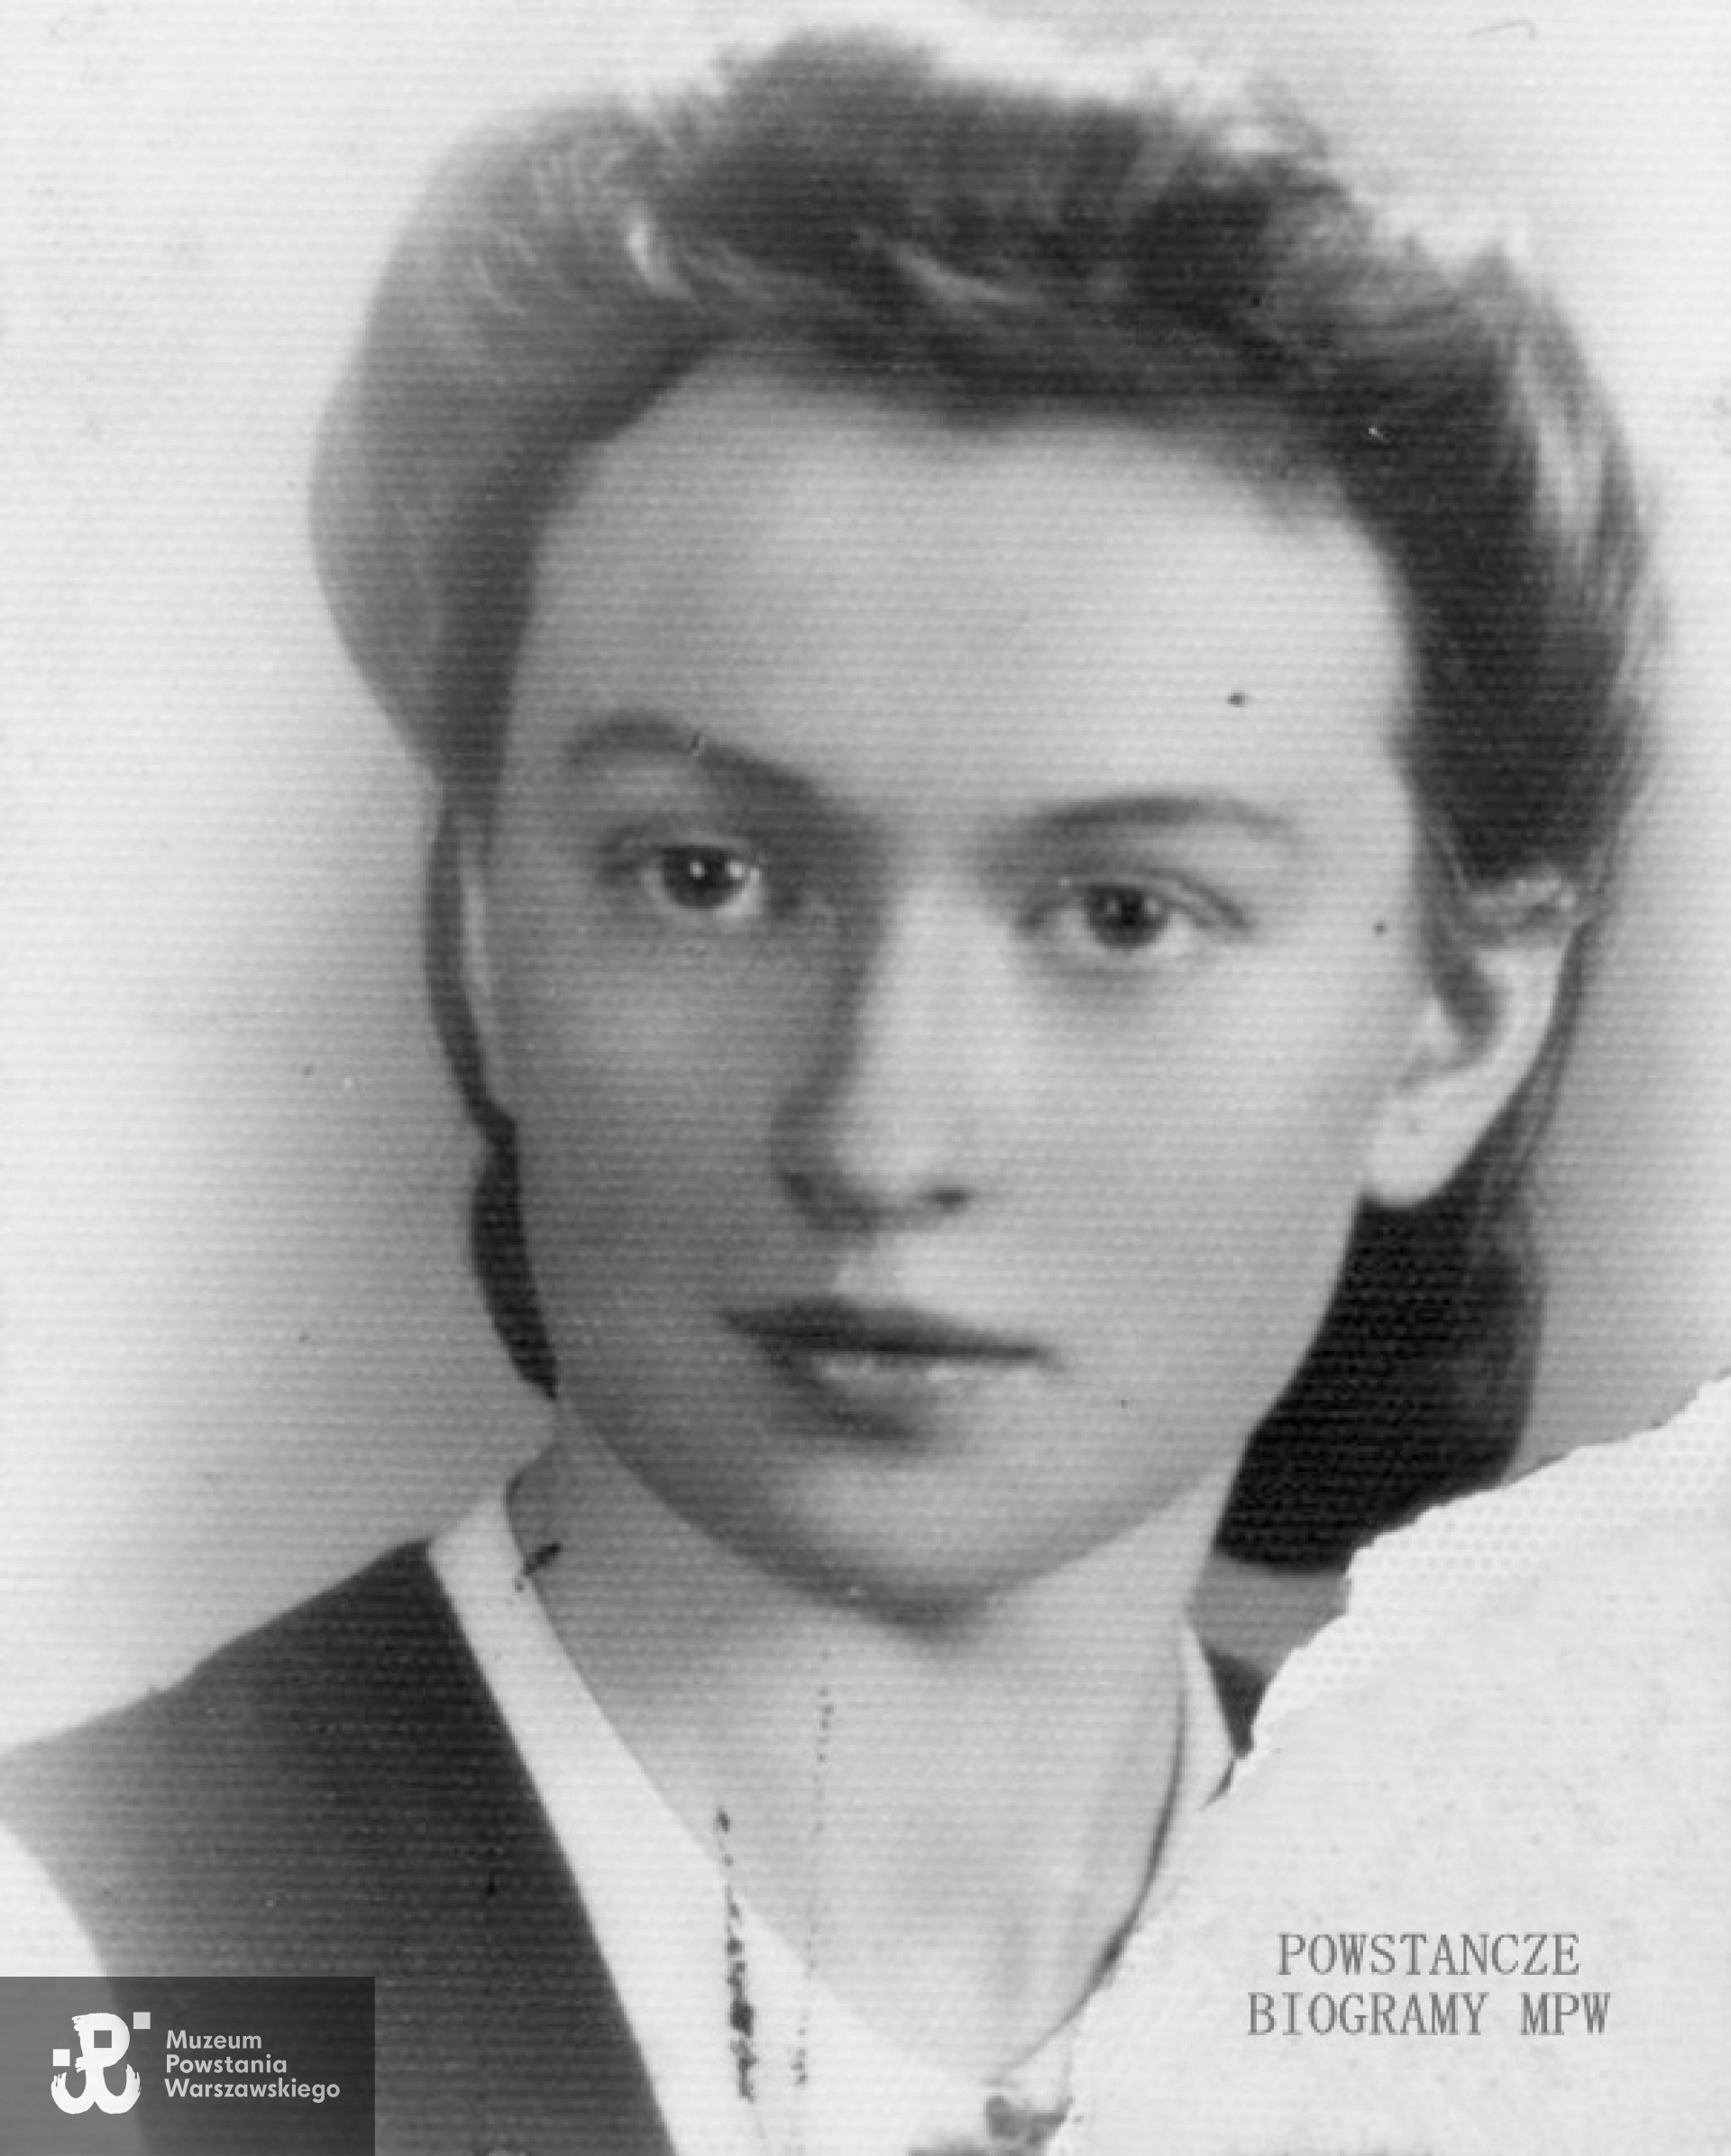 Stefania Grzeszczak "Stefa" (1923-1944)